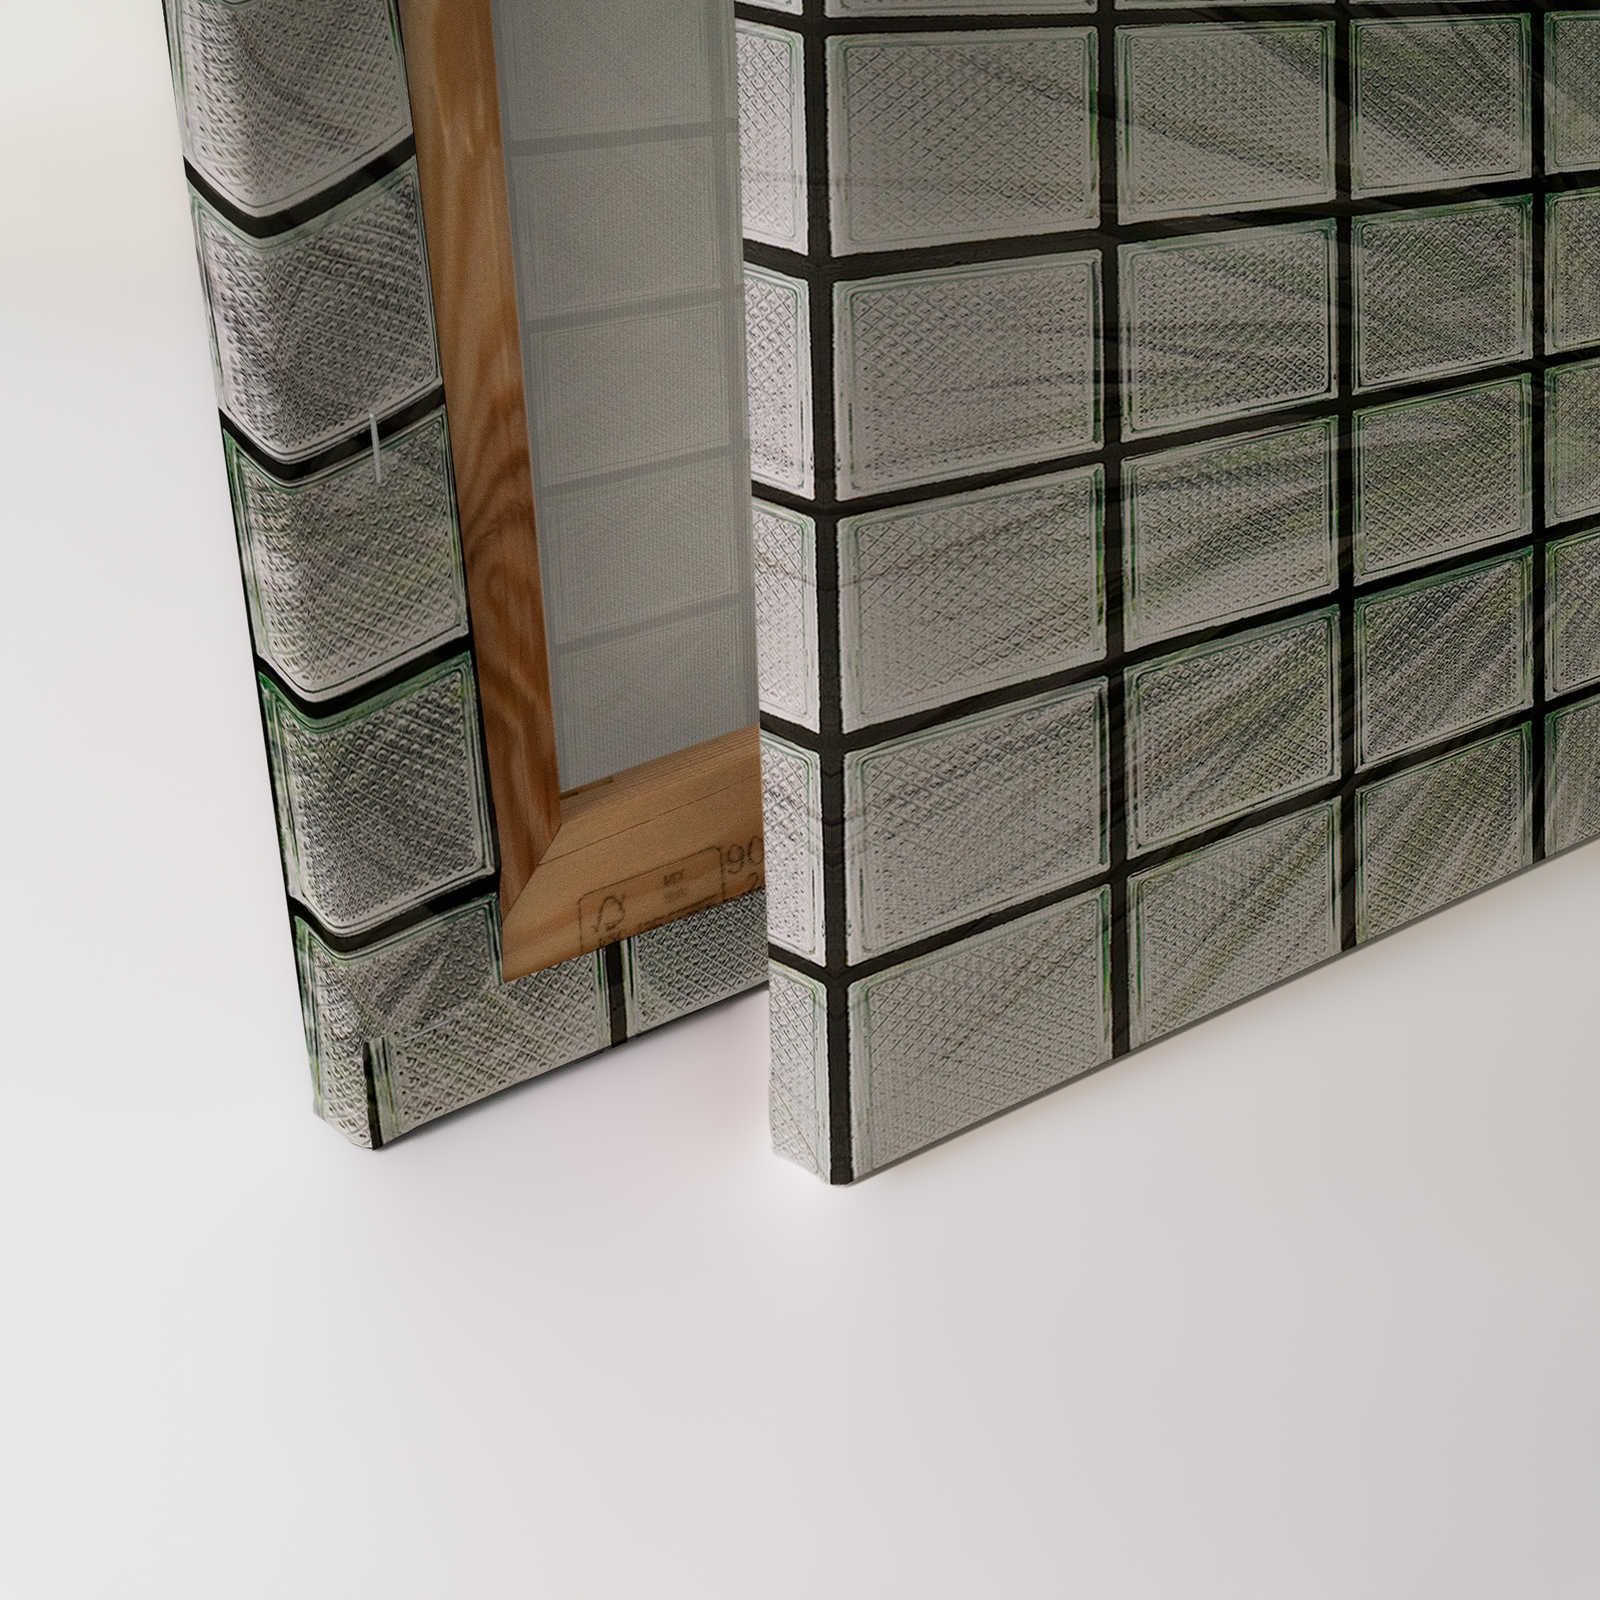             Green House 1 - Pintura en lienzo Palmeras y bloques de vidrio - 0,90 m x 0,60 m
        